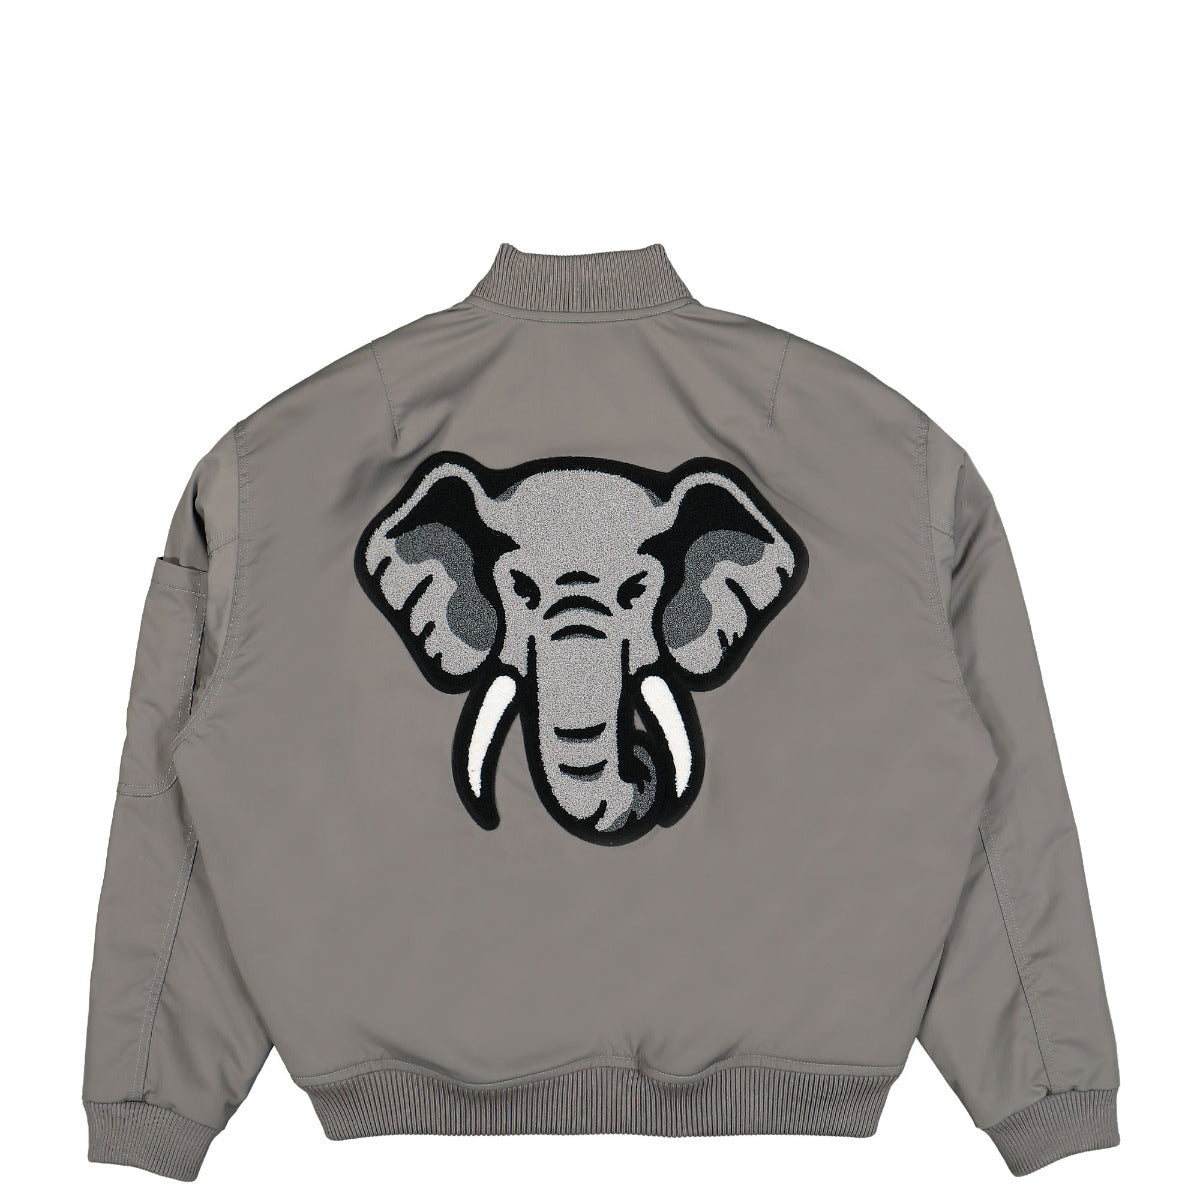 Elephant Bomber Jacket